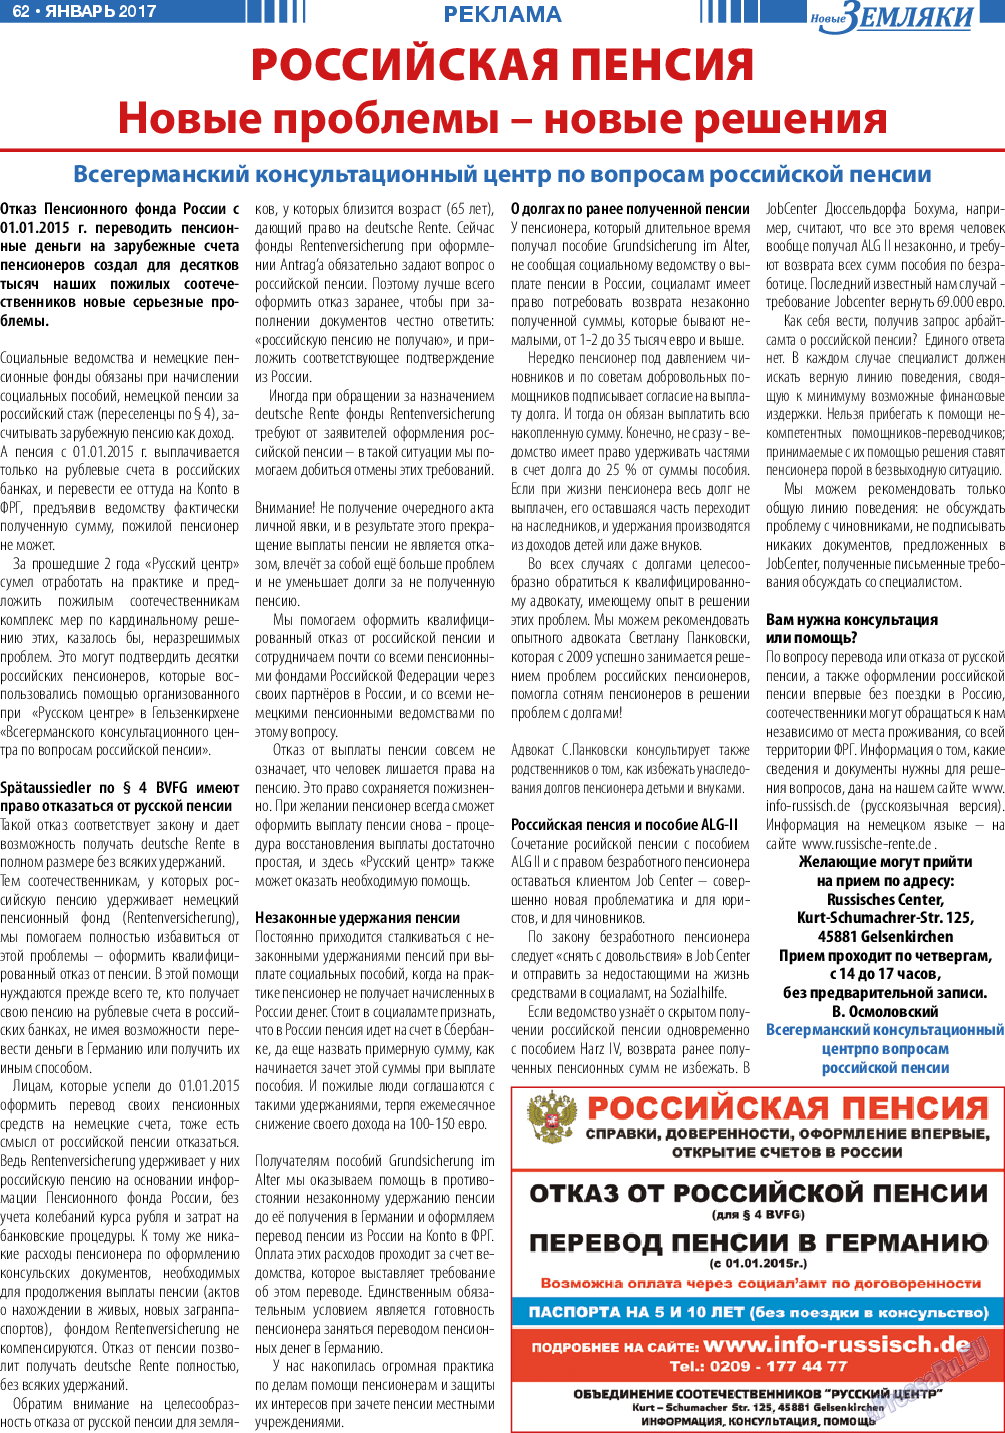 Новые Земляки, газета. 2017 №1 стр.62